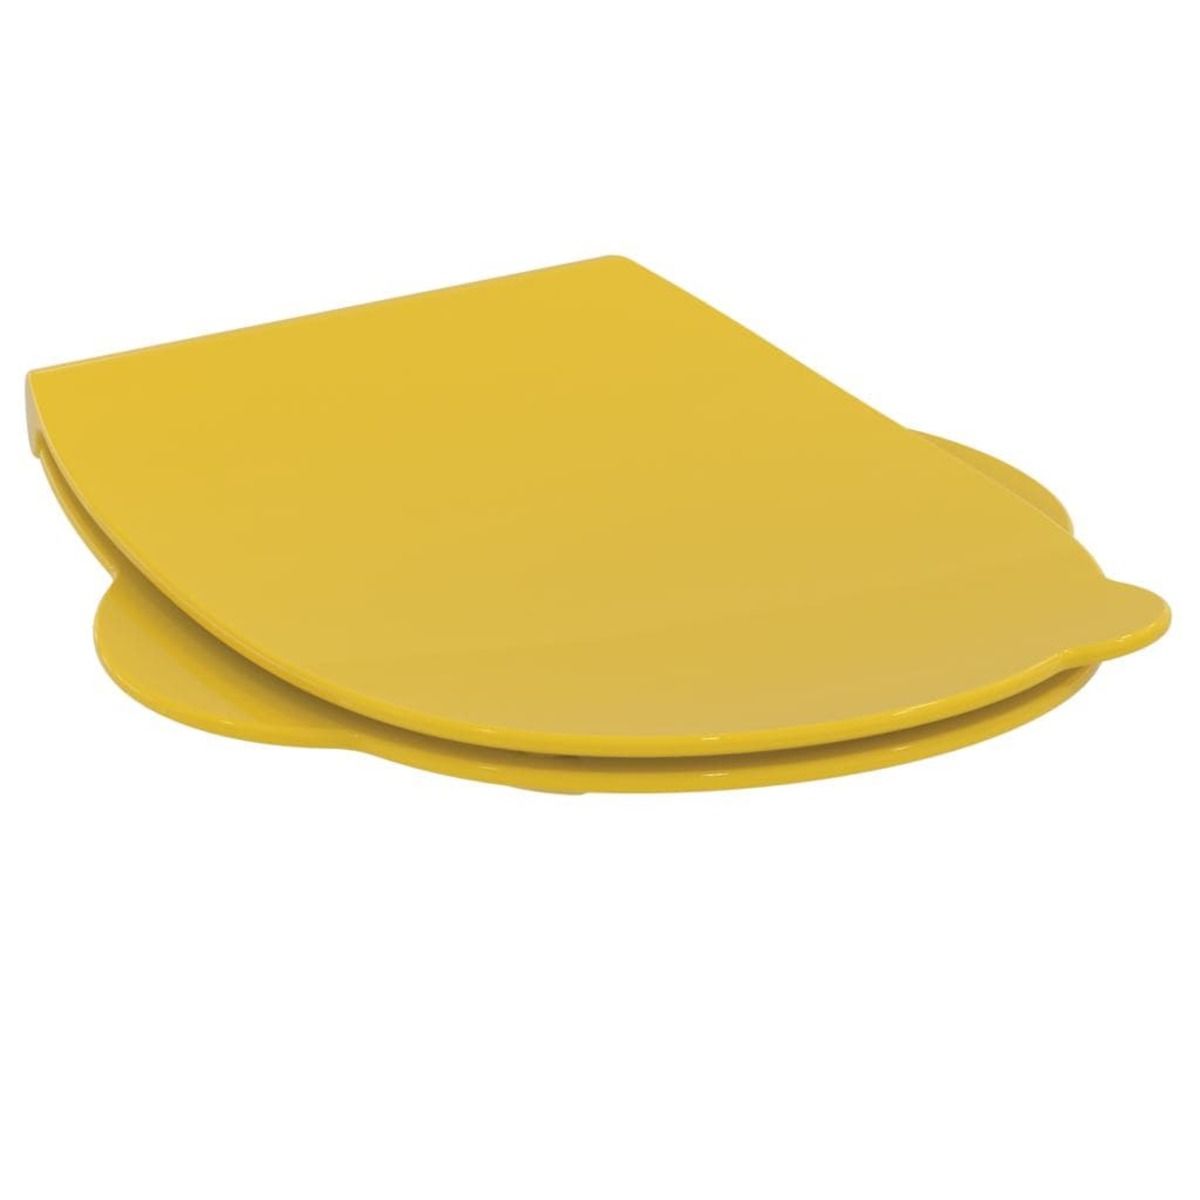 Wc prkénko Ideal Standard Contour 21 duroplast žlutá S453379 - Siko - koupelny - kuchyně